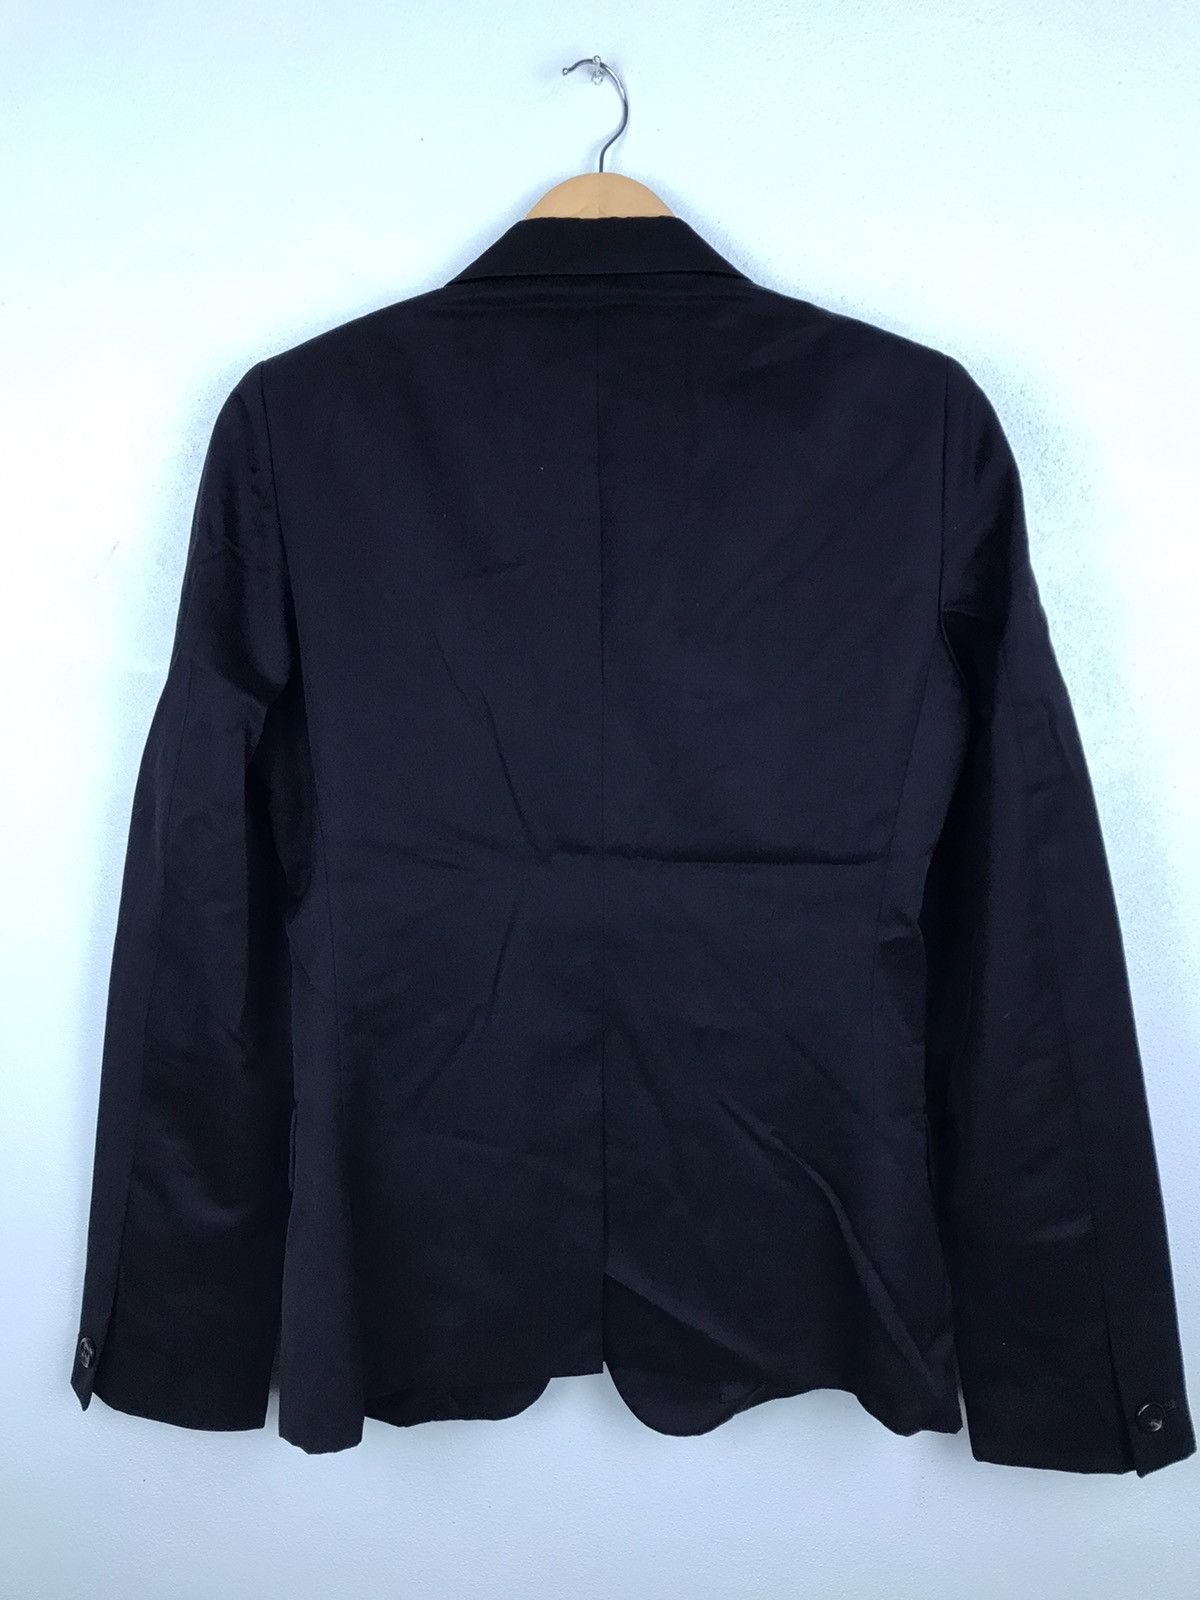 LAST DROP!! Undercoverism Black Wool Suits jacket - Gh5719 - 2